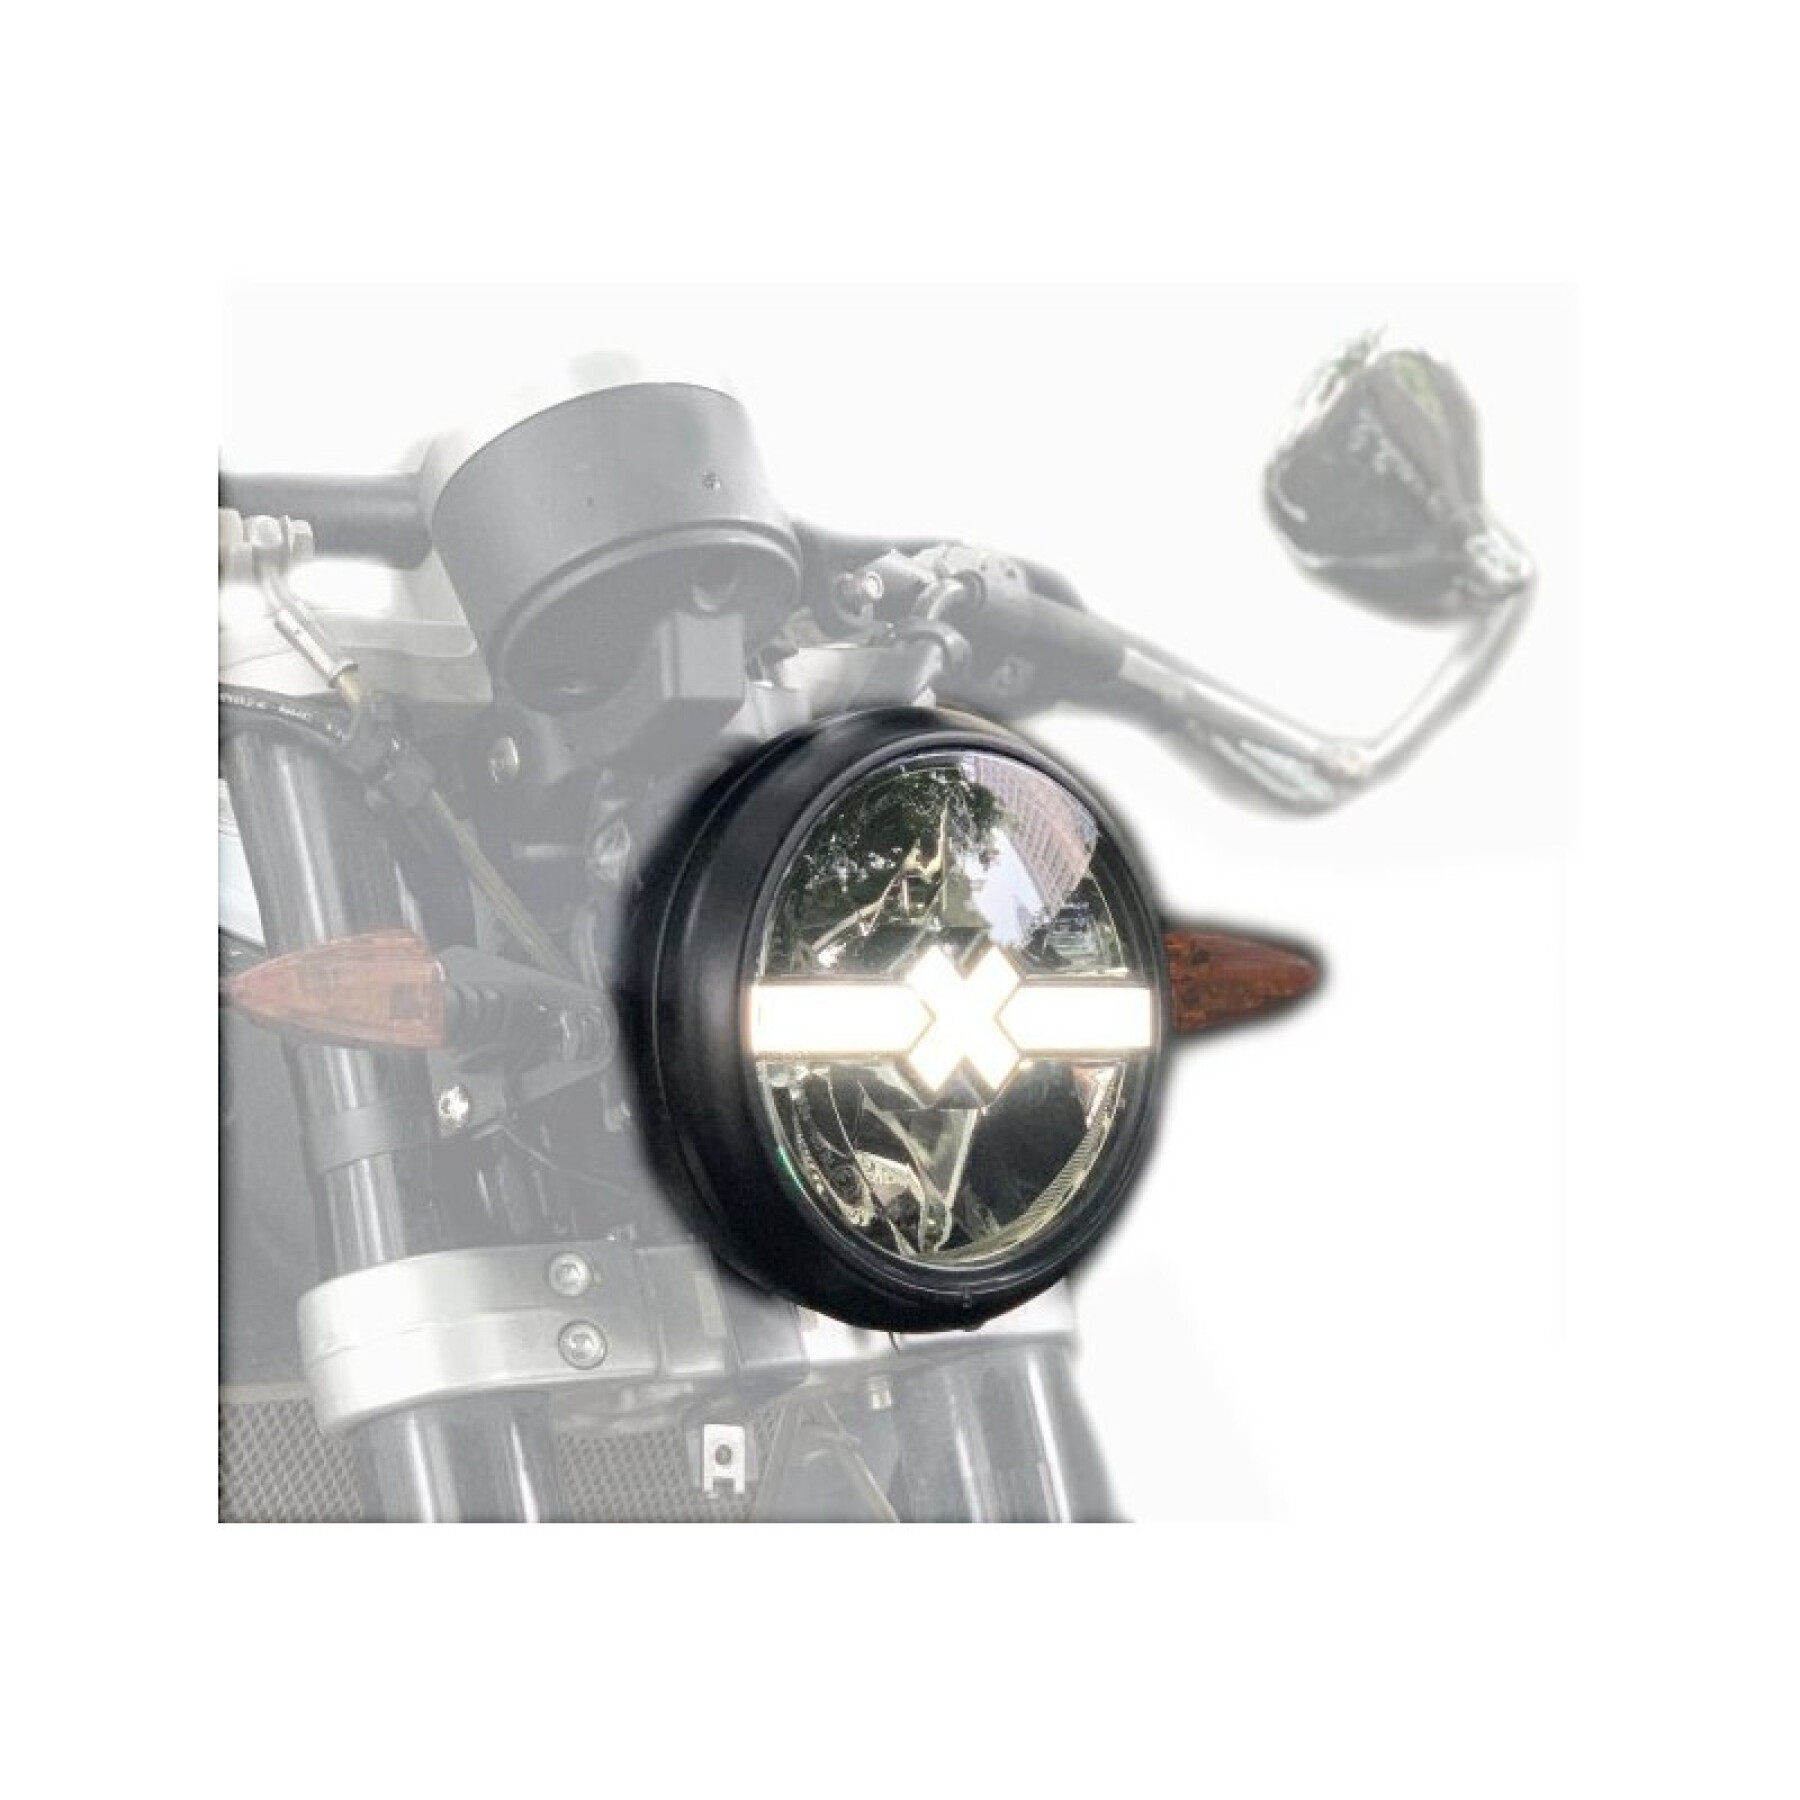 Motorfiets met geleide koplamp Brazoline Custum